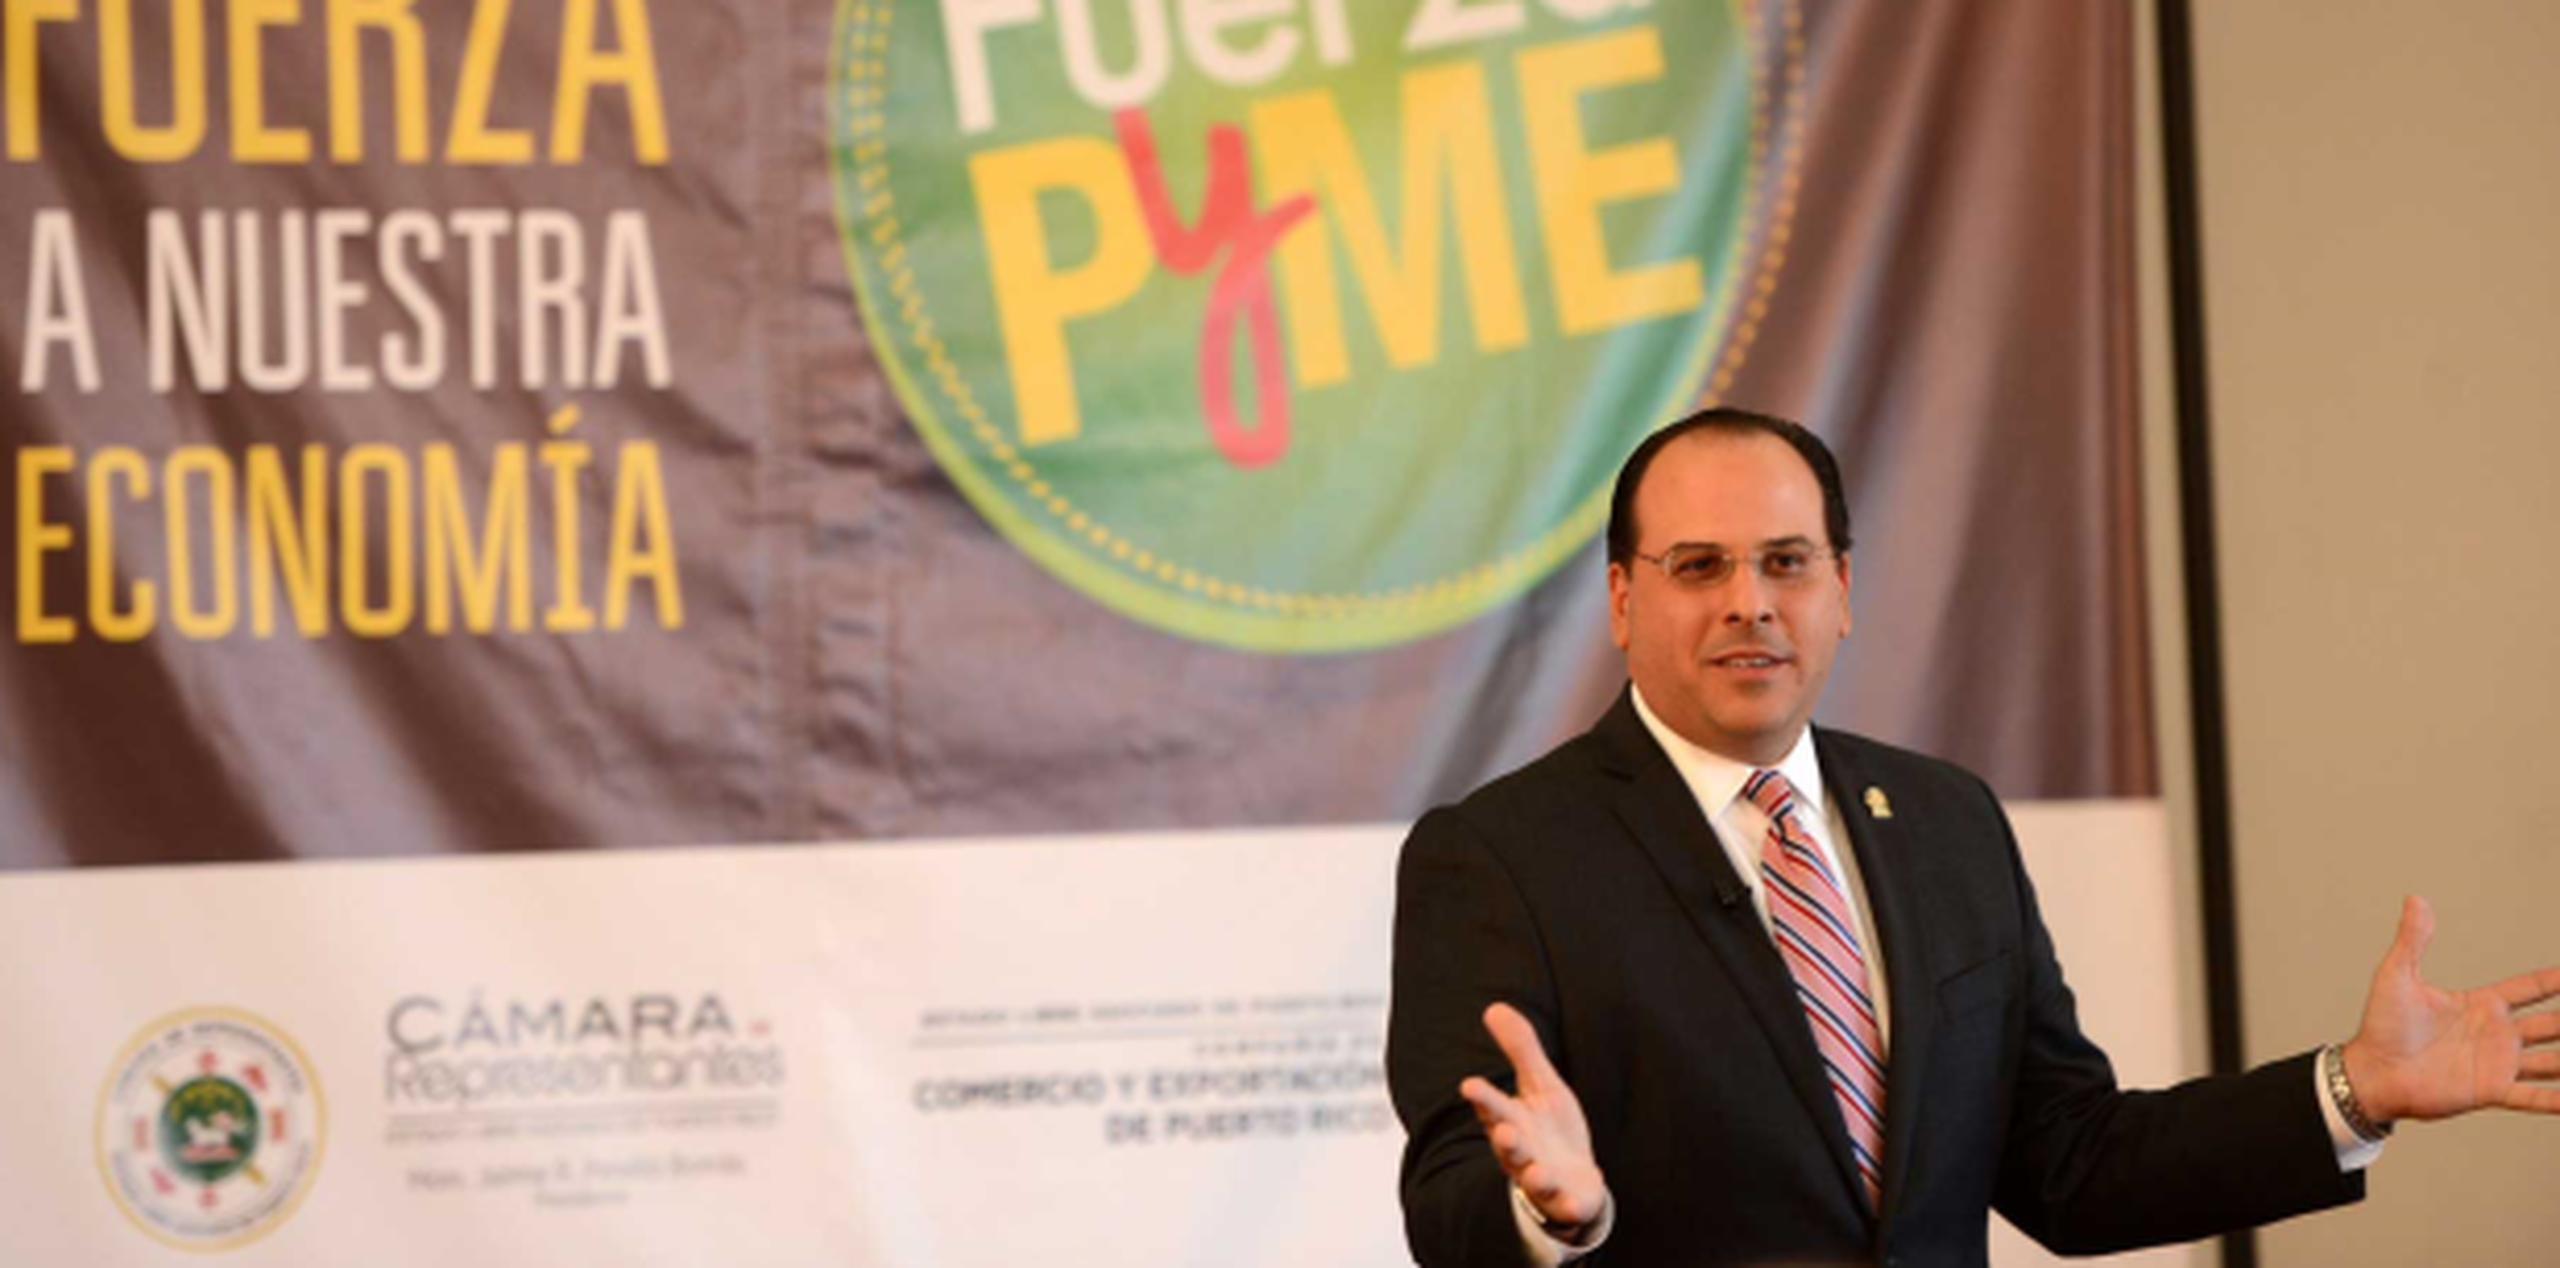 La Cámara y la CCE firmaron un acuerdo colaborativo para desarrollar la campaña “Fuerza PyME”. En la foto, el presidente cameral, Jaime Perelló. (Suministrada)